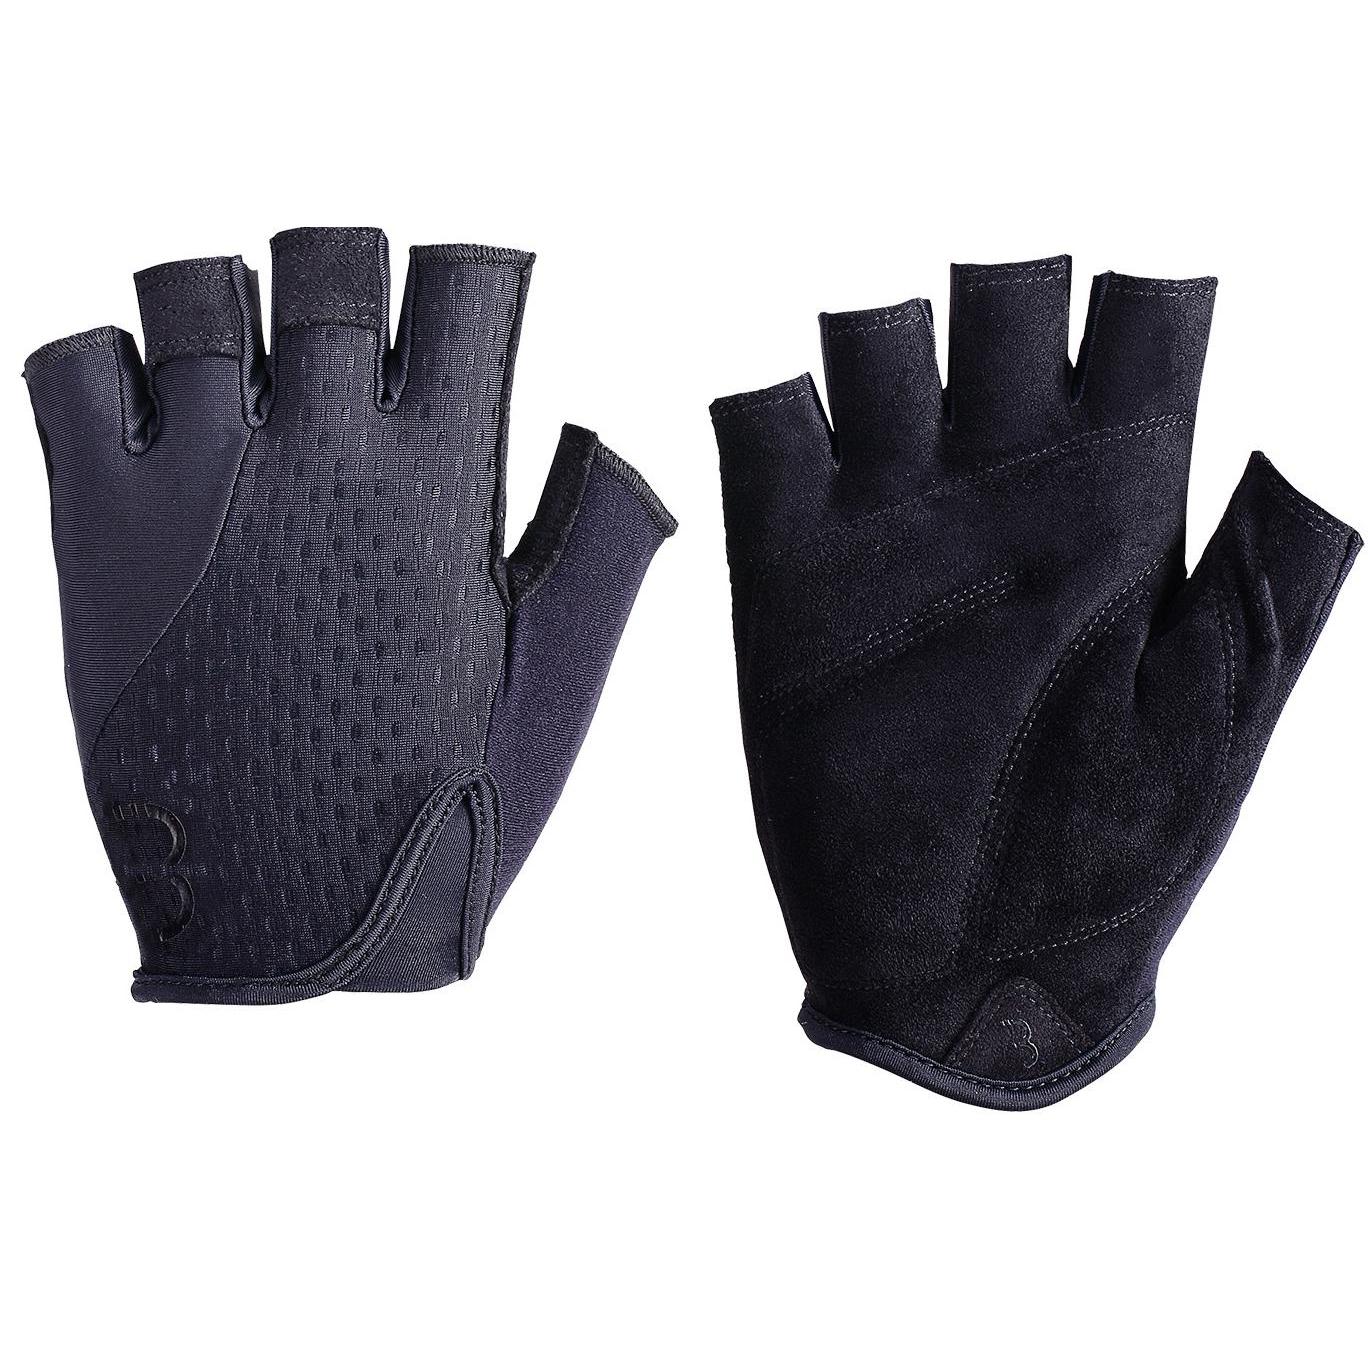 Велосипедные перчатки BBB Racer, black, S